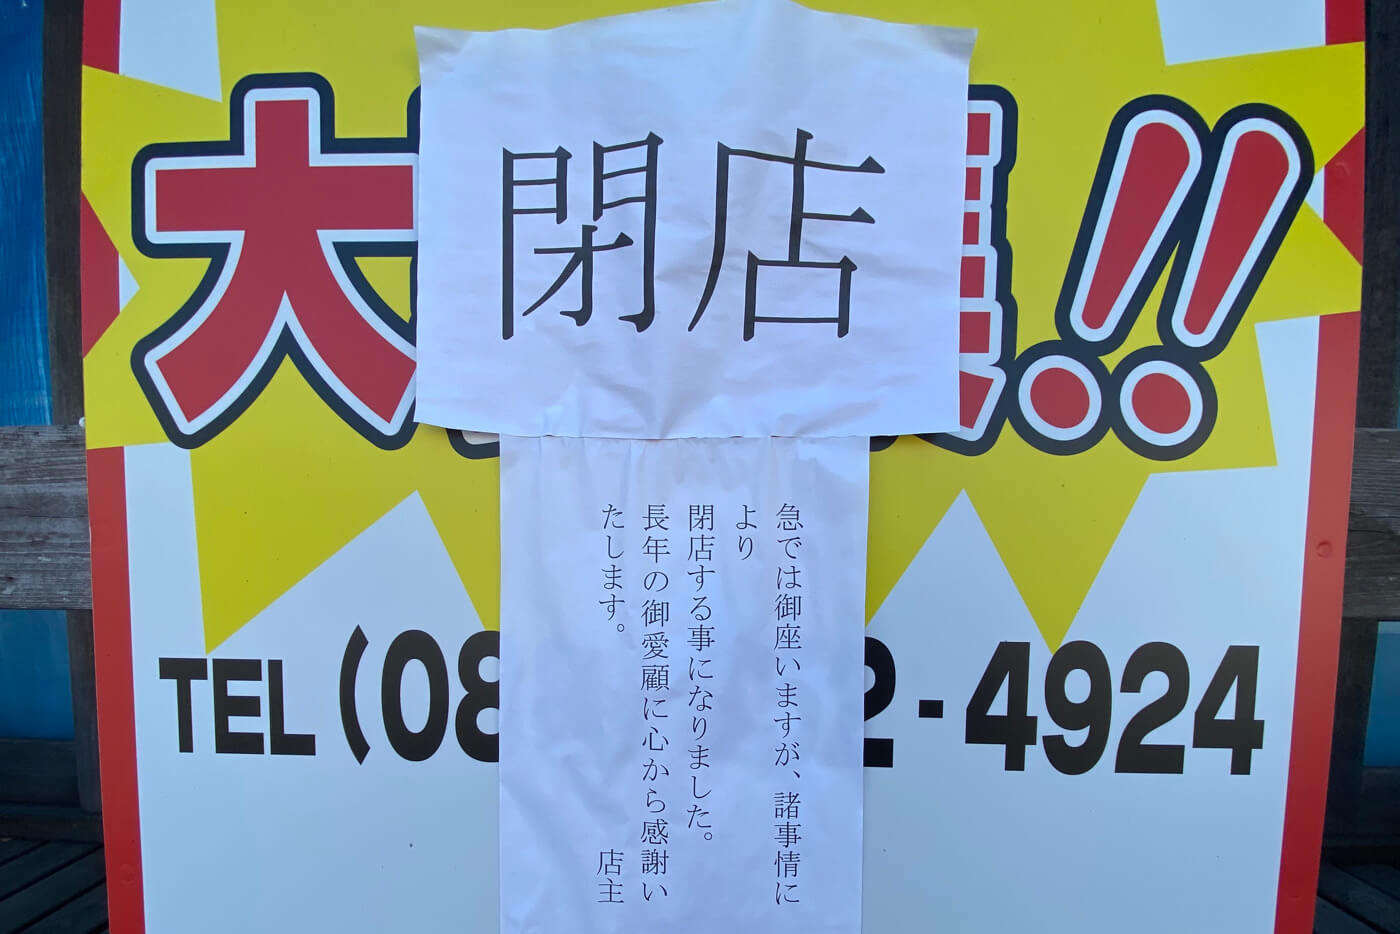 焼肉菜館大五郎の店先に貼られた閉店のお知らせ